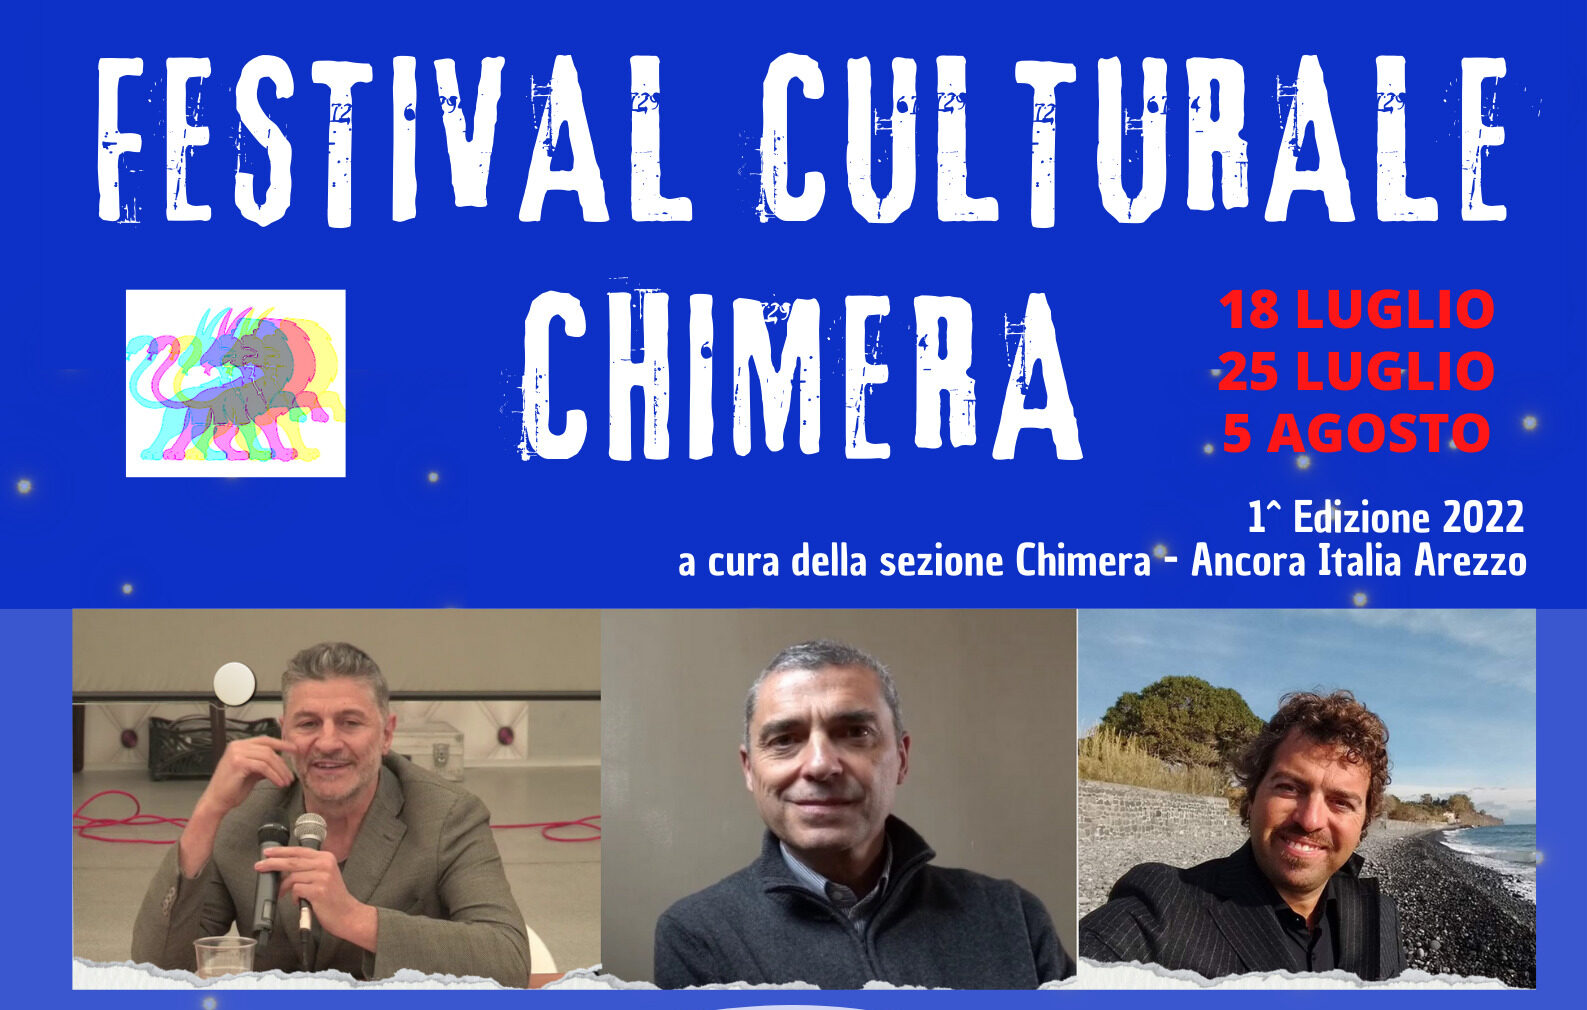 La sezione Chimera di Ancora Italia organizza il 1° Festival Culturale Chimera